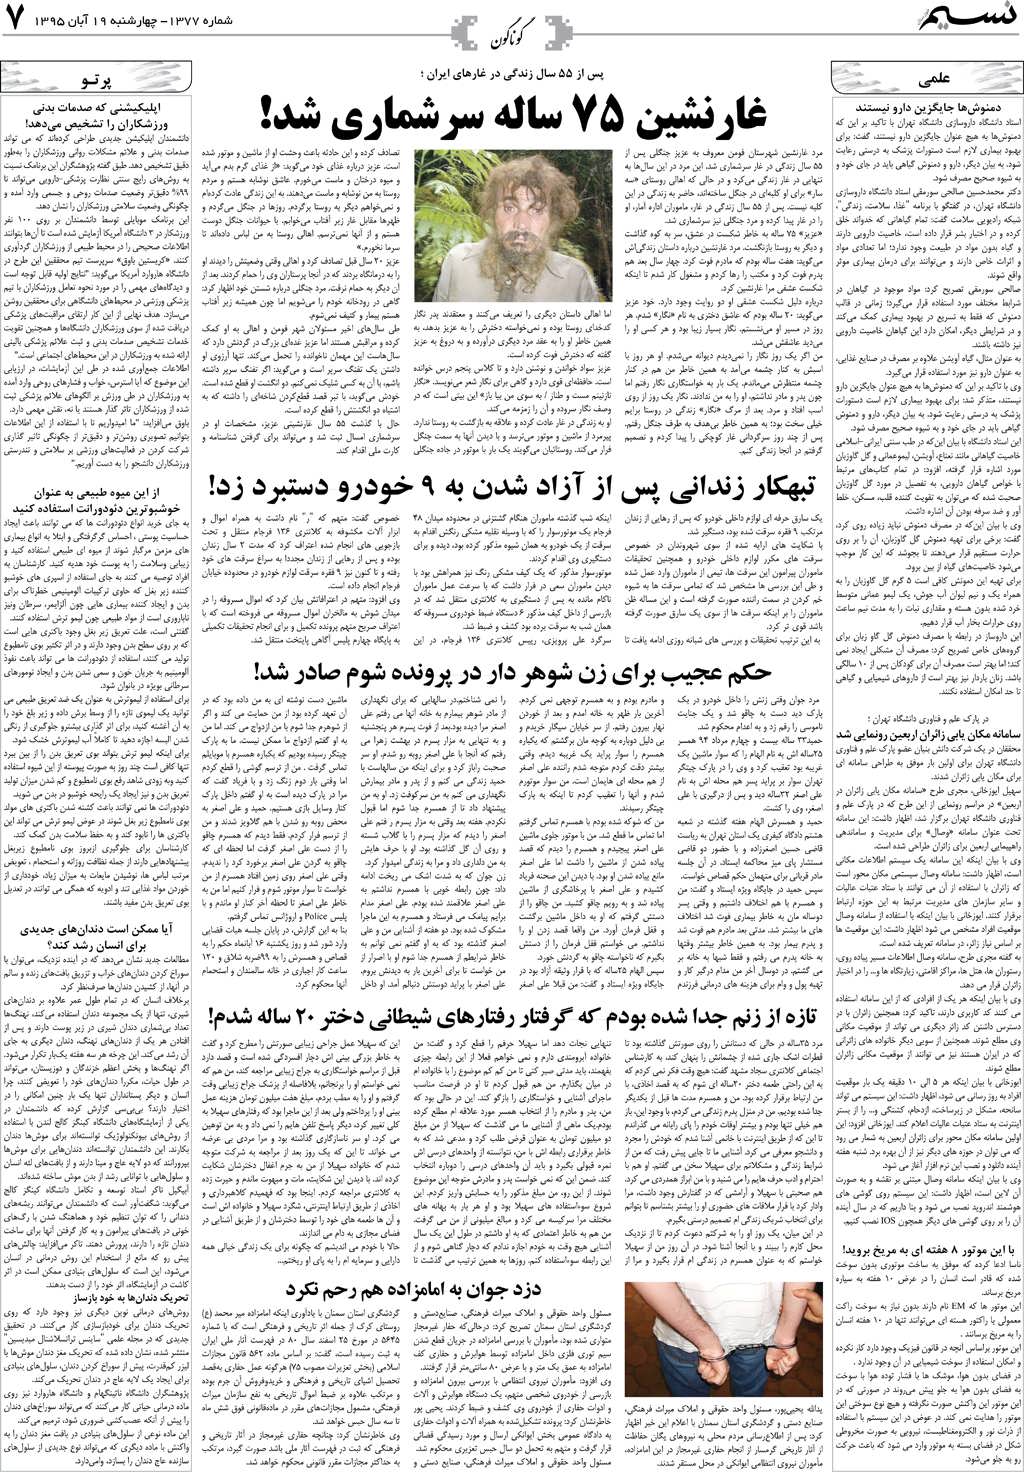 صفحه گوناگون روزنامه نسیم شماره 1377